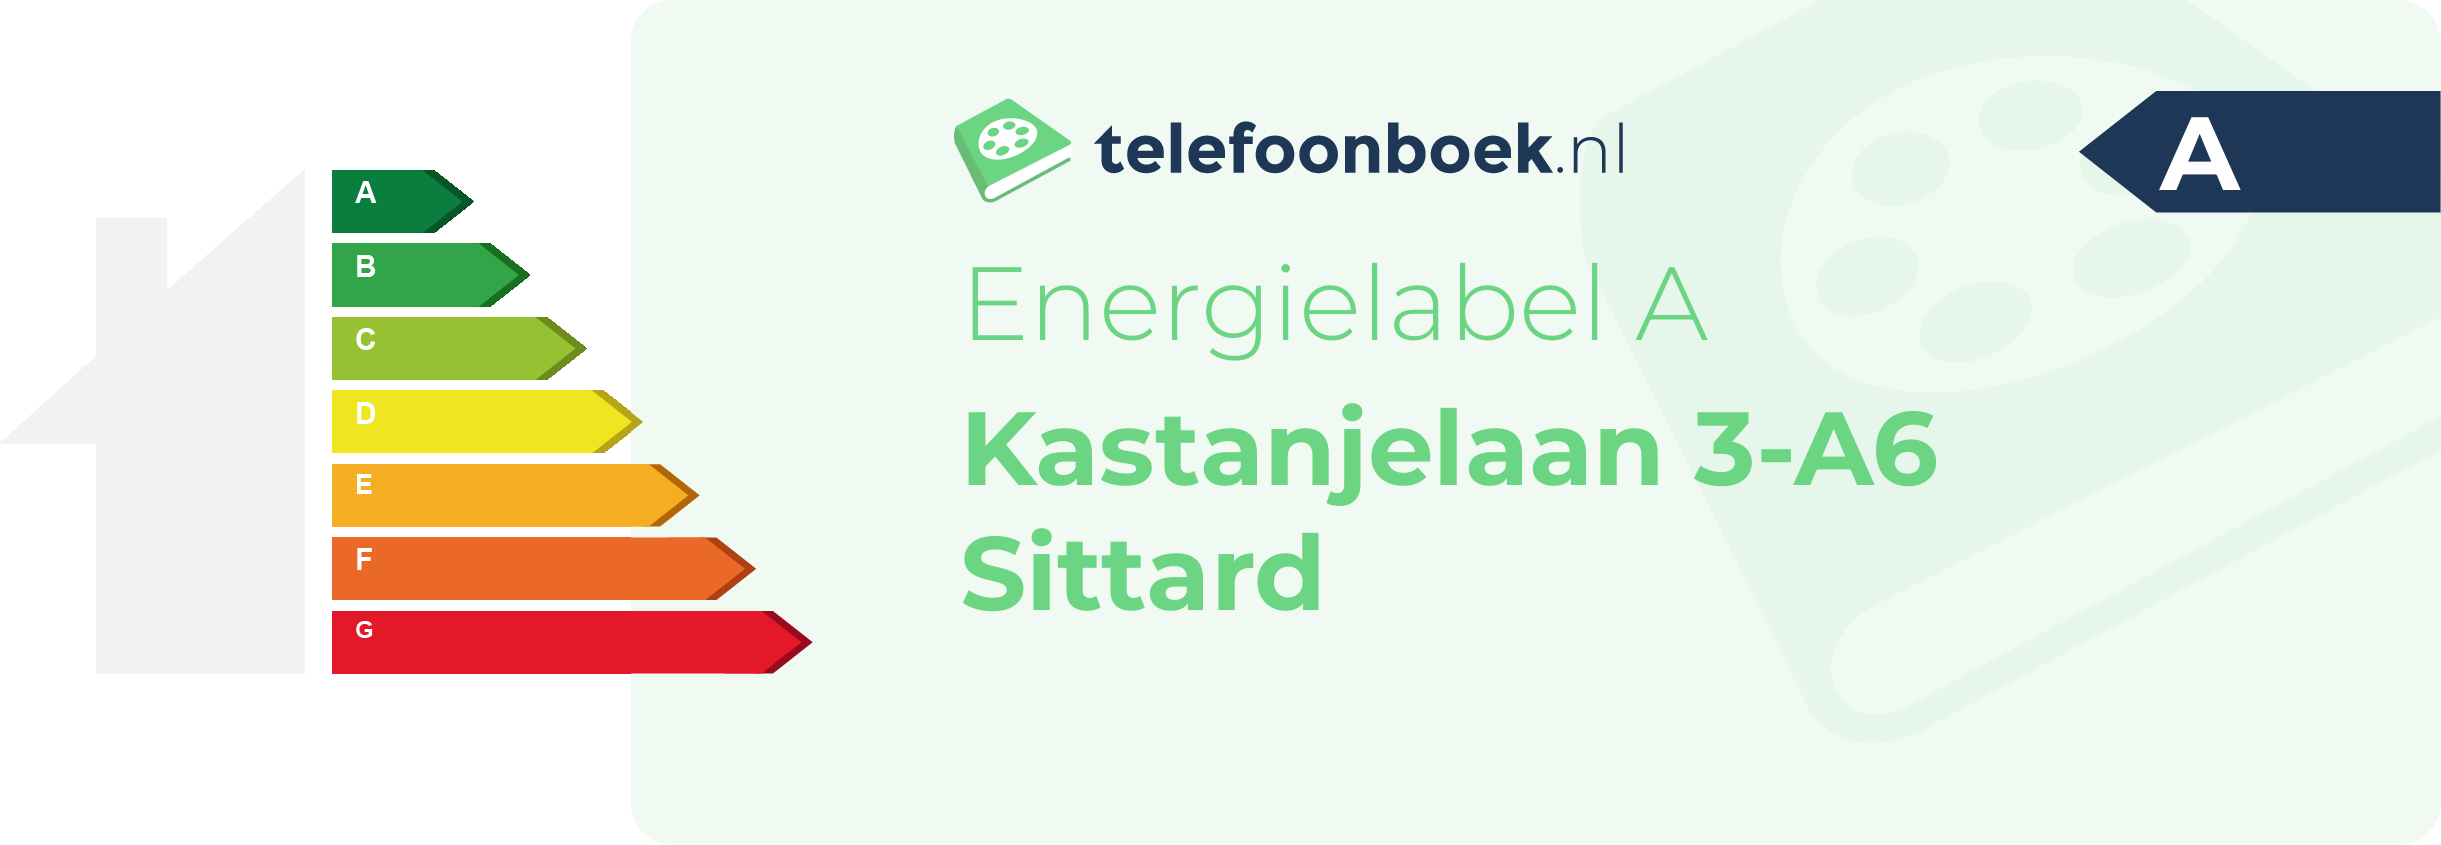 Energielabel Kastanjelaan 3-A6 Sittard